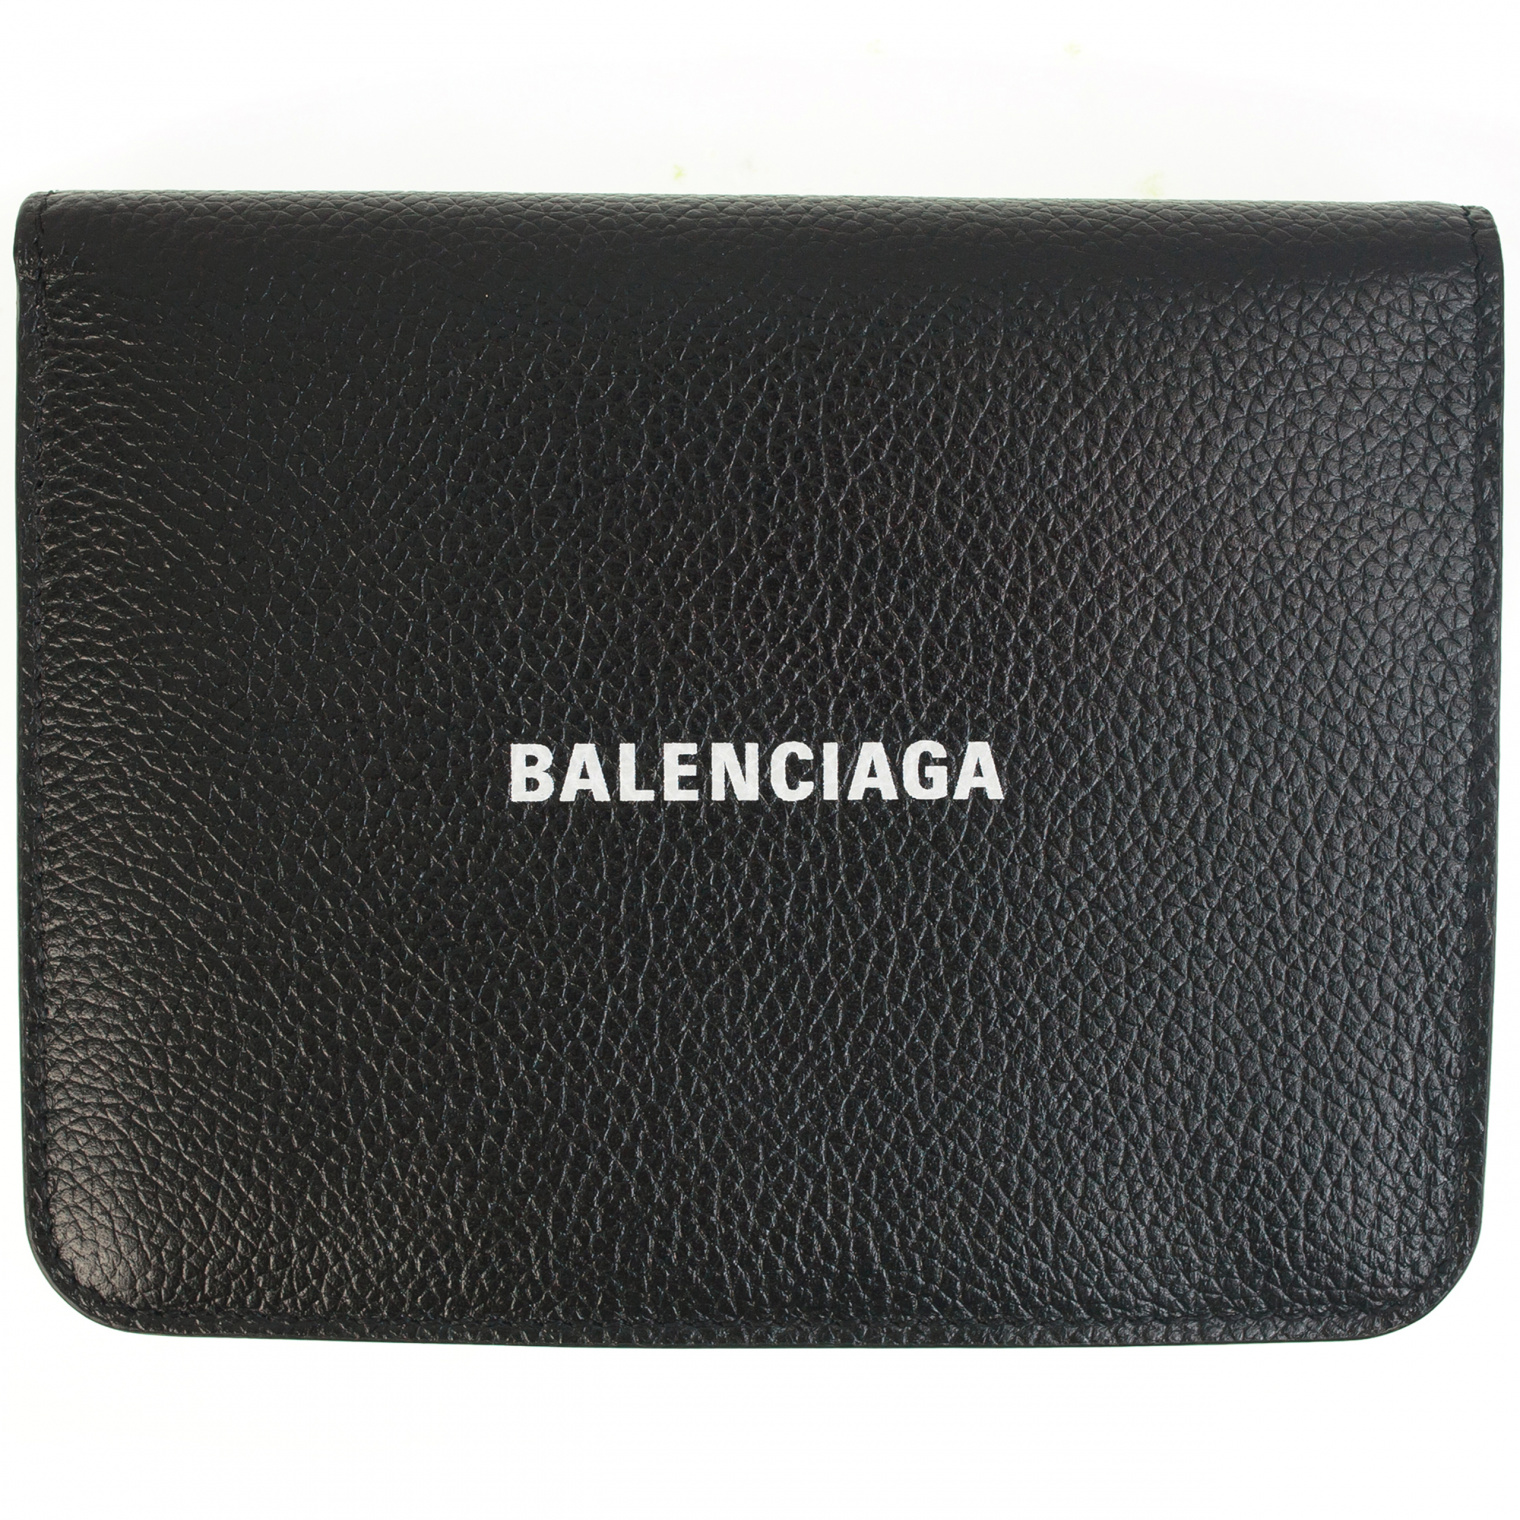 Balenciaga Black Leather Cash Wallet